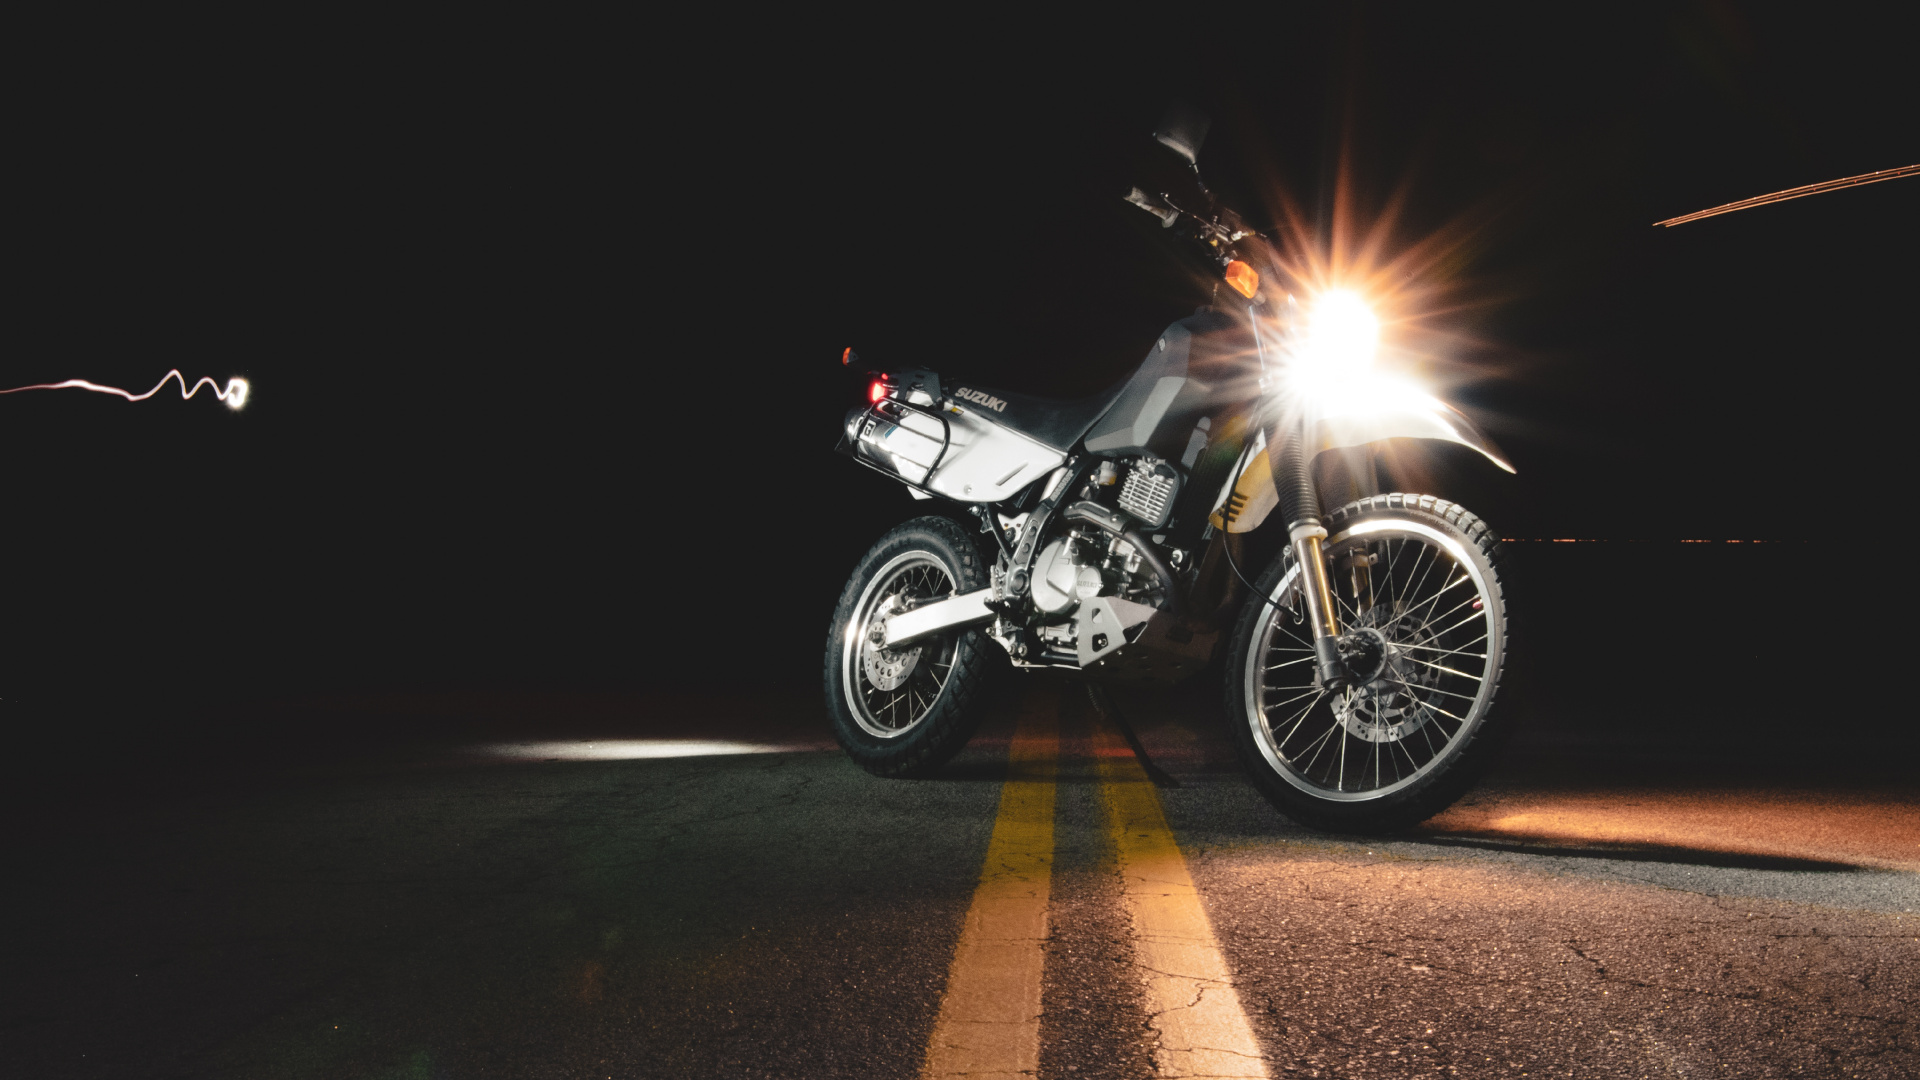 摩托车配件, 车灯, 头灯, 光, 自由式的摩托车越野赛 壁纸 1920x1080 允许